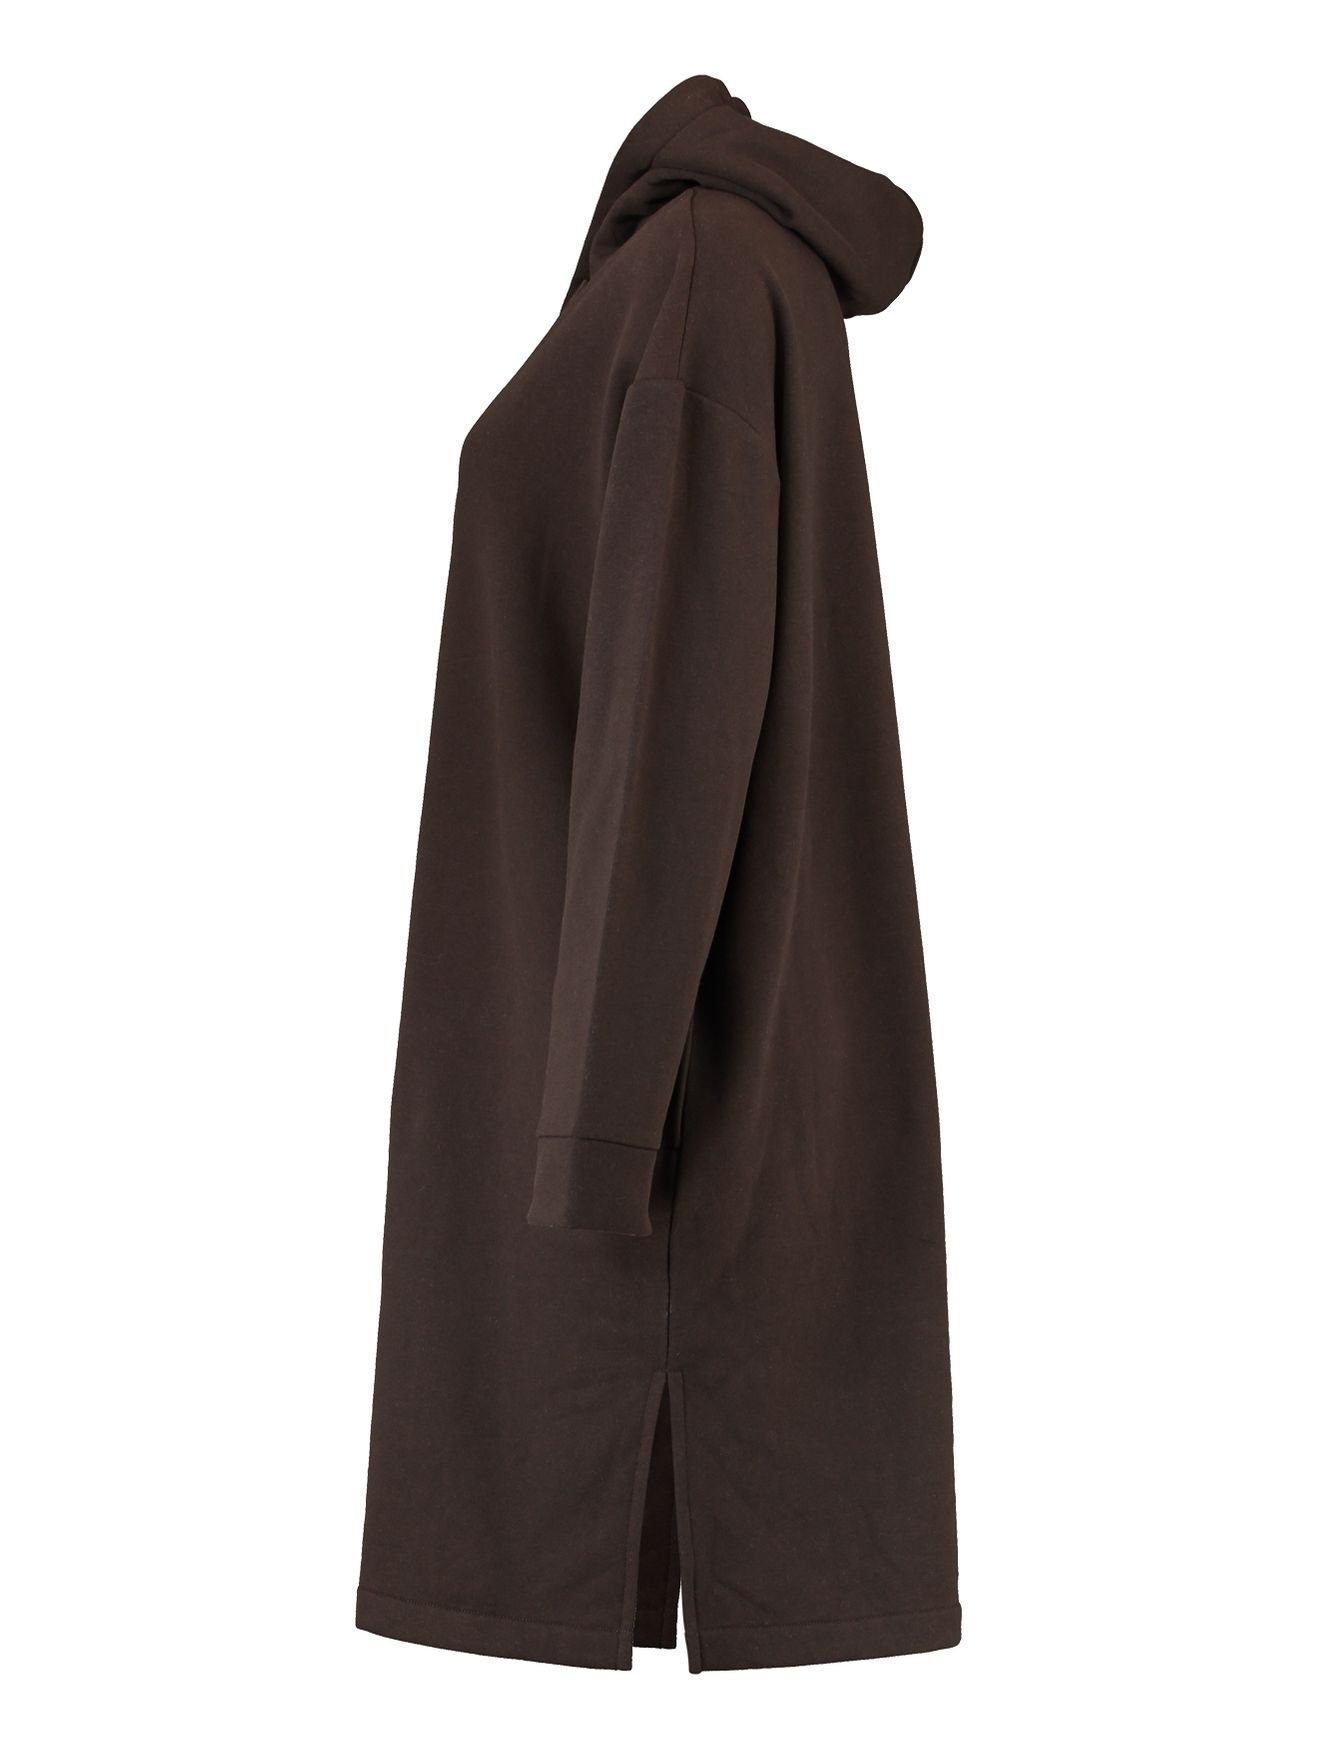 HaILY’S Shirtkleid Kleid Kapuzen SWERA Dress Hoodie (lang) Sweat in 4705 Knielang Pullover Mini Braun-2